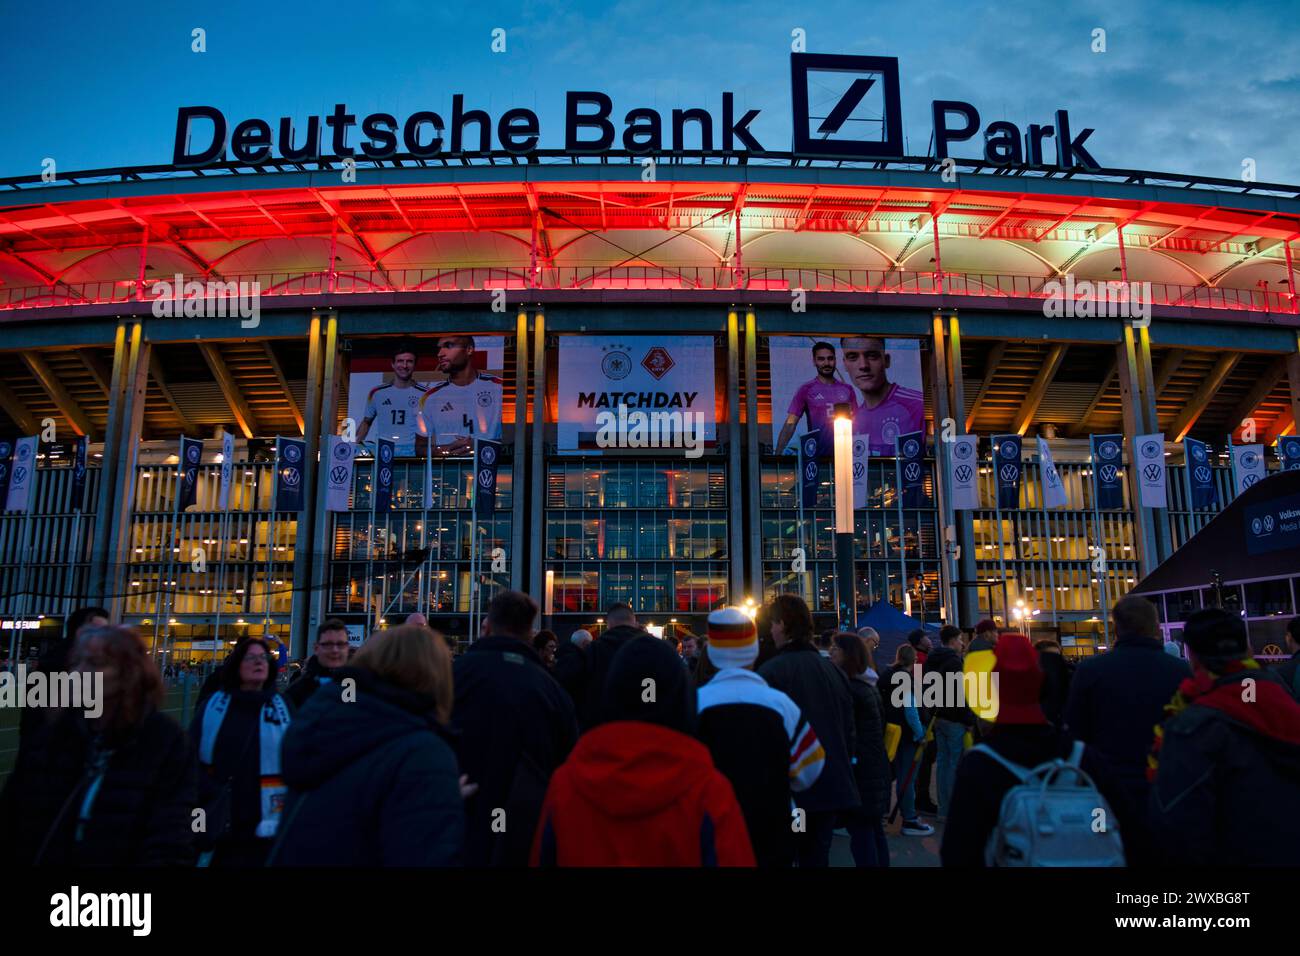 Fans, spectateurs flux dans le stade, match international Allemagne GER vs pays-Bas NED, Deutsche Bank Park, Blue Hour, Francfort-sur-le-main Banque D'Images